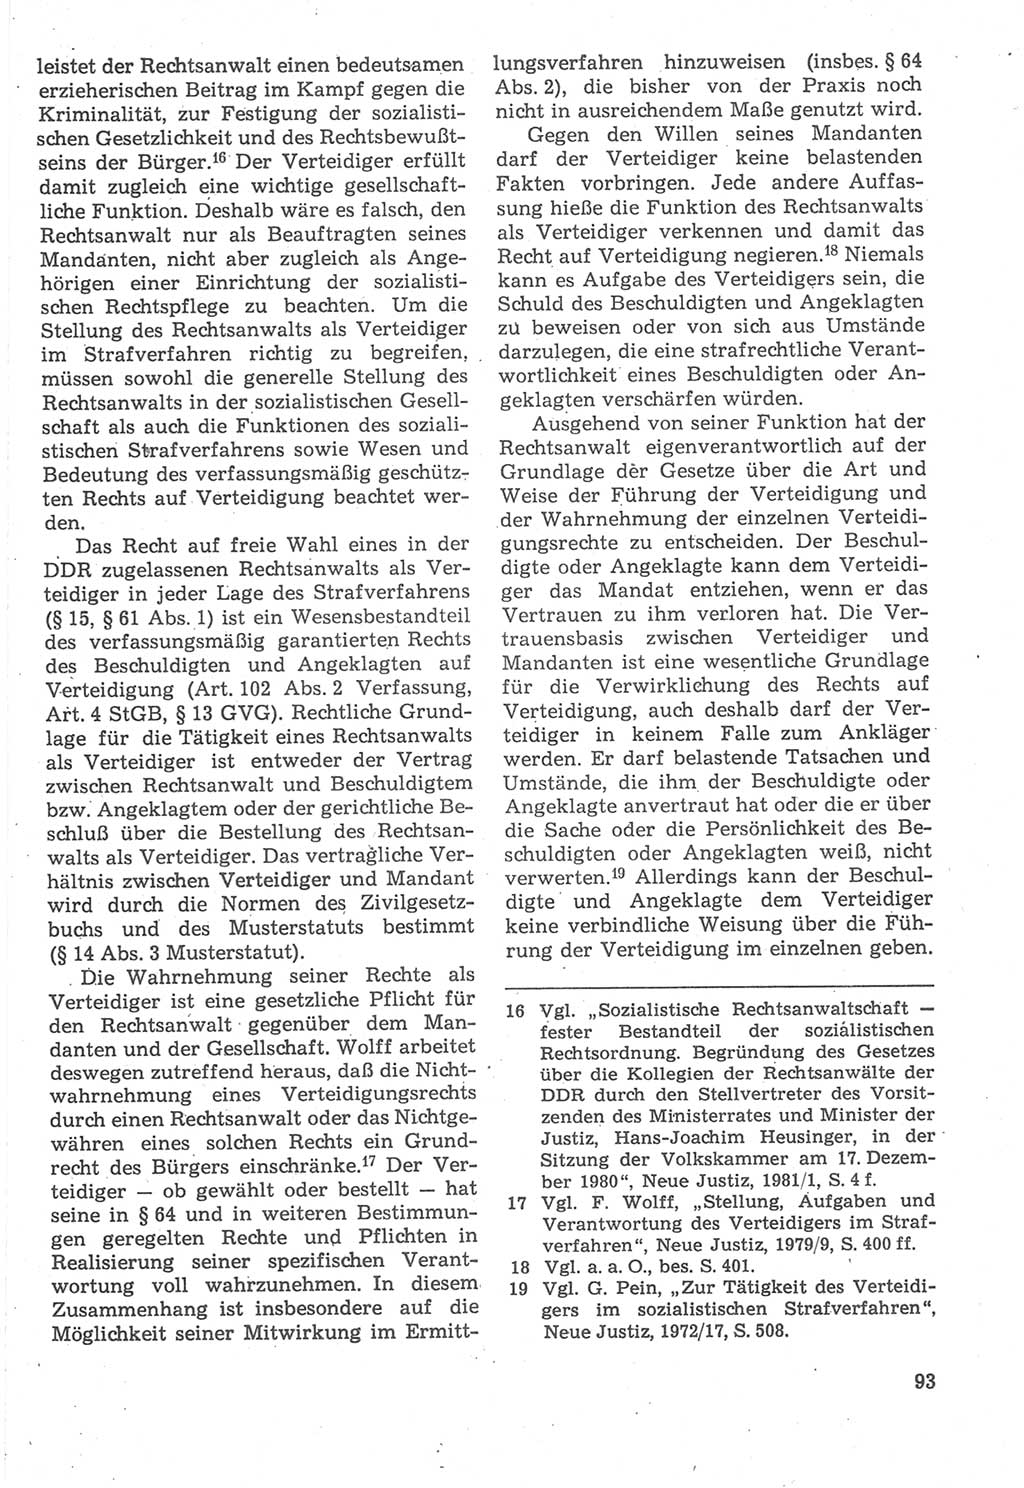 Strafverfahrensrecht [Deutsche Demokratische Republik (DDR)], Lehrbuch 1987, Seite 93 (Strafverf.-R. DDR Lb. 1987, S. 93)